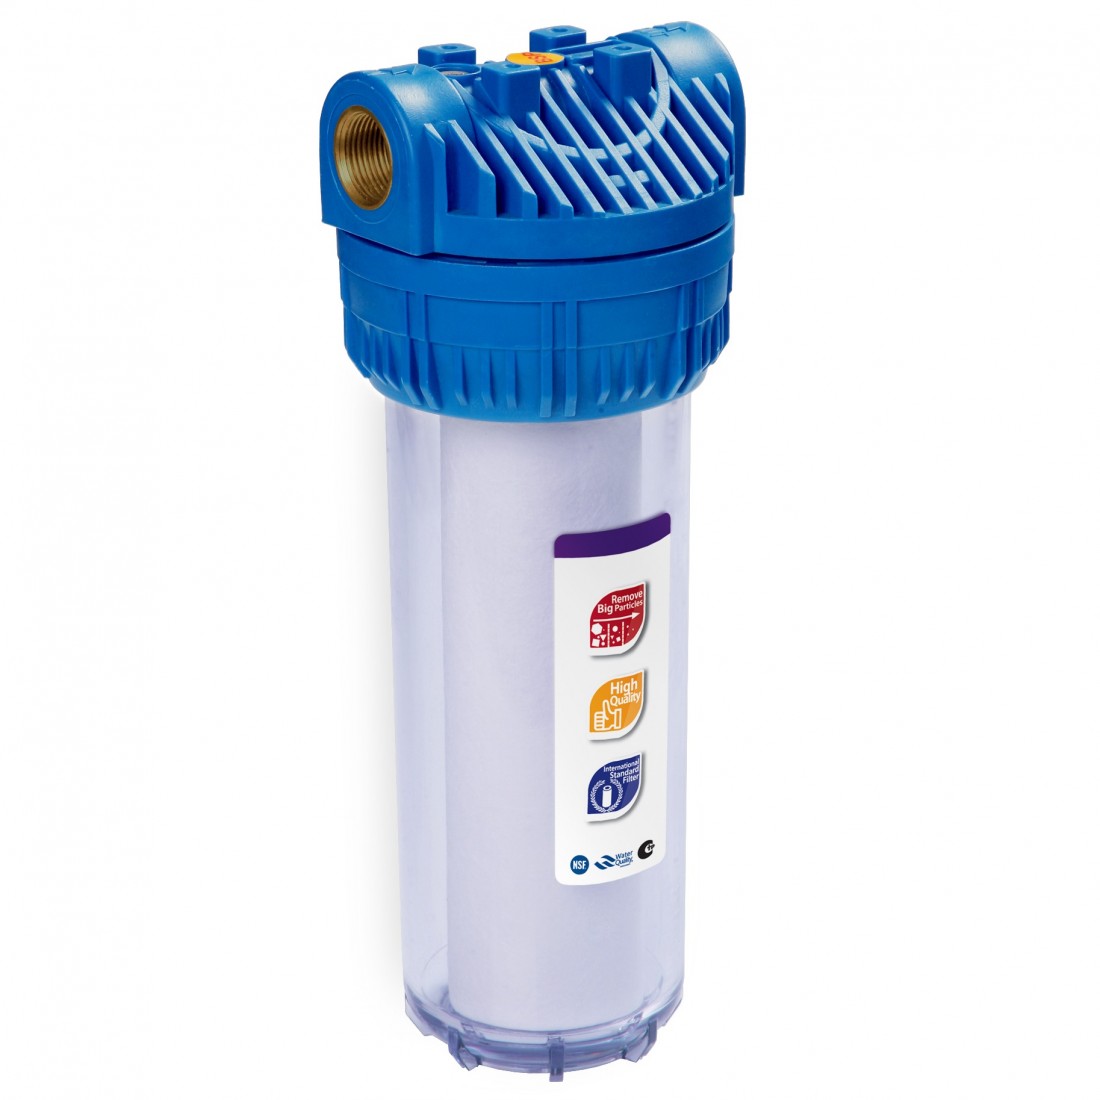 Фильтры воды металла. Фильтр магистральный RAIFIL ps897-bk1-PR-С. Корпус Aqua fp3 10" SL, 1/2". АБФ-10-12 магистральный фильтр. Фильтр магистральный для воды c889-b12-PR-BN RAIFIL.